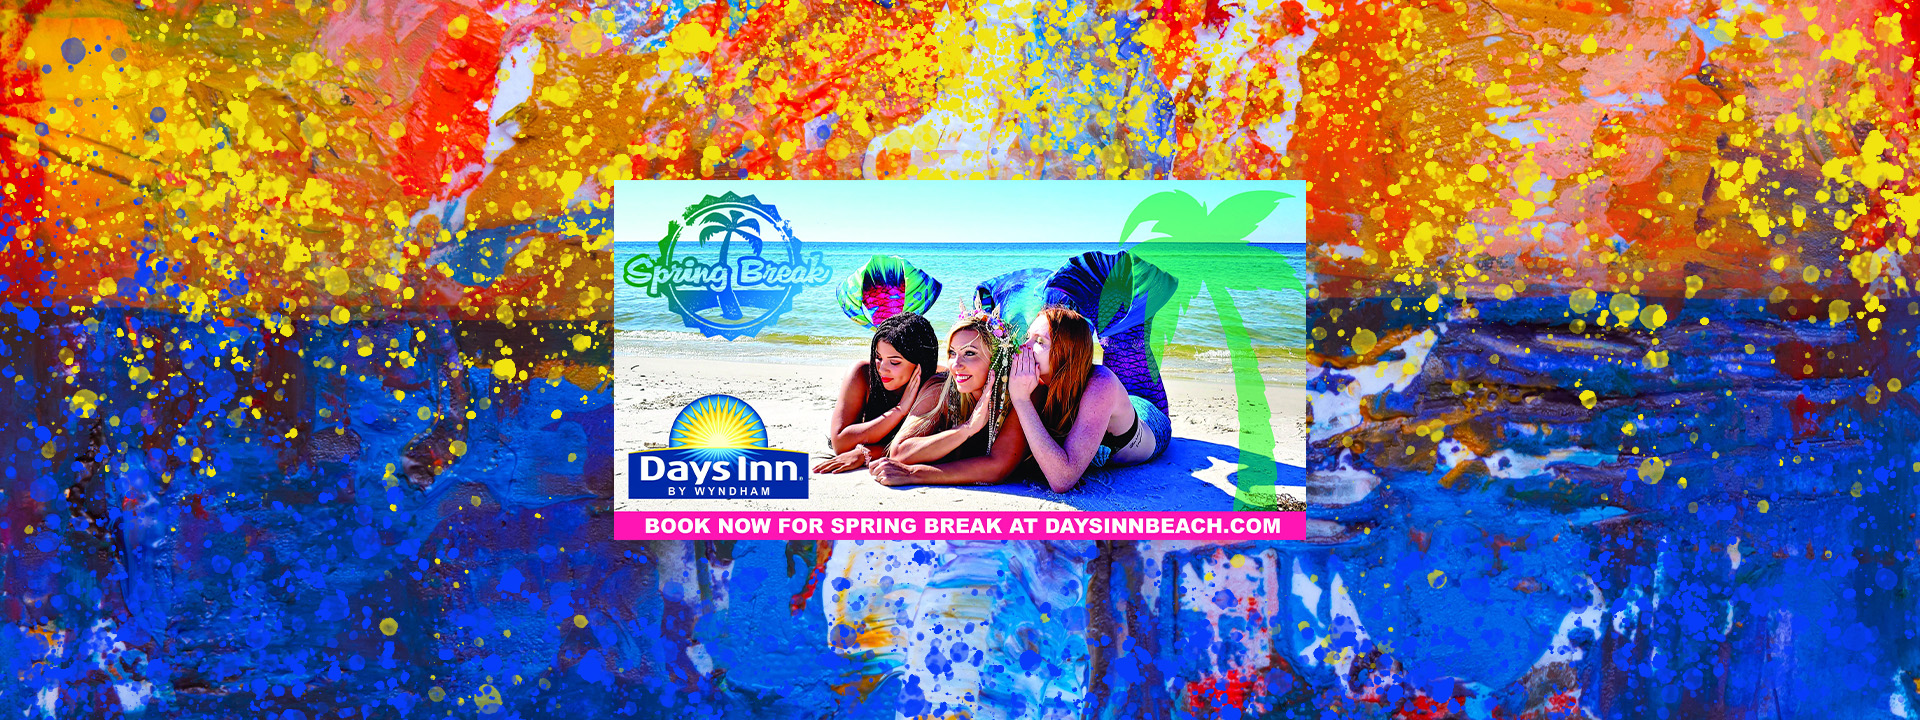 events-days-inn-panama-city-beach-florida